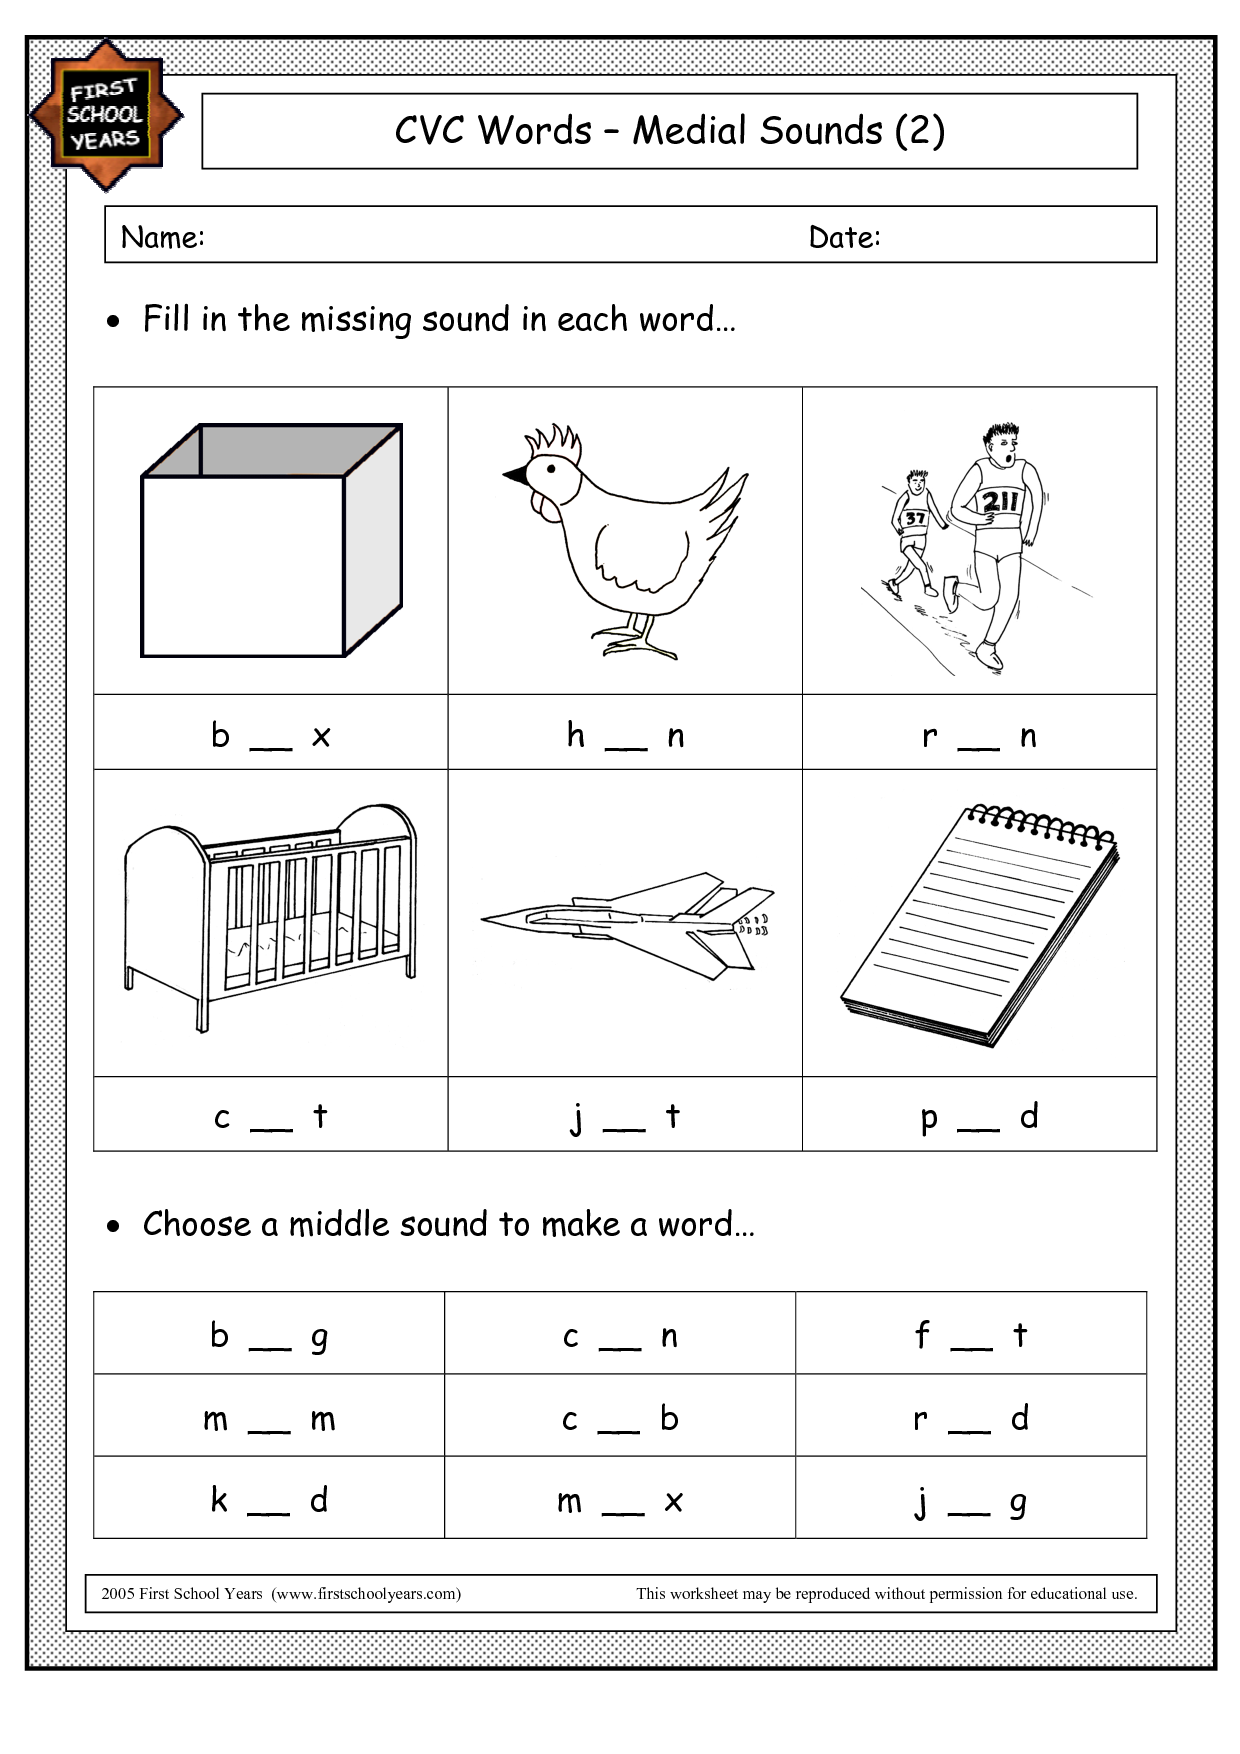 CVC Words Medial Sounds Worksheets Image